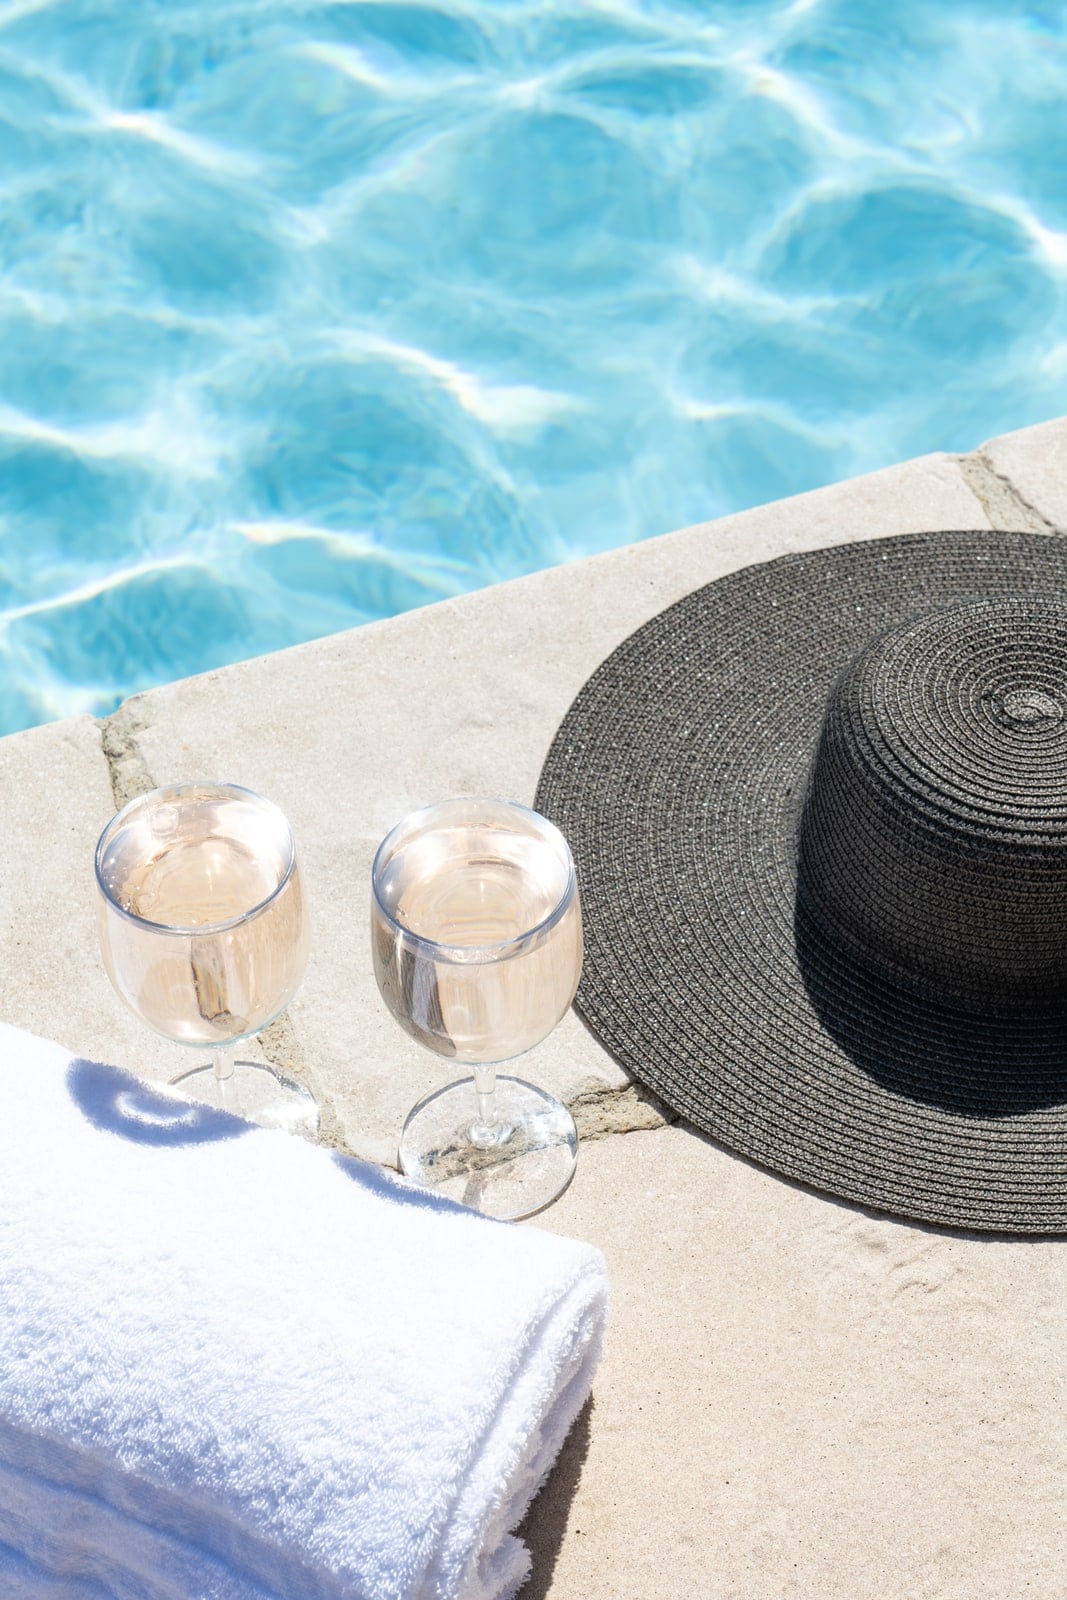 verres, serviette et chapeau en bord de piscine